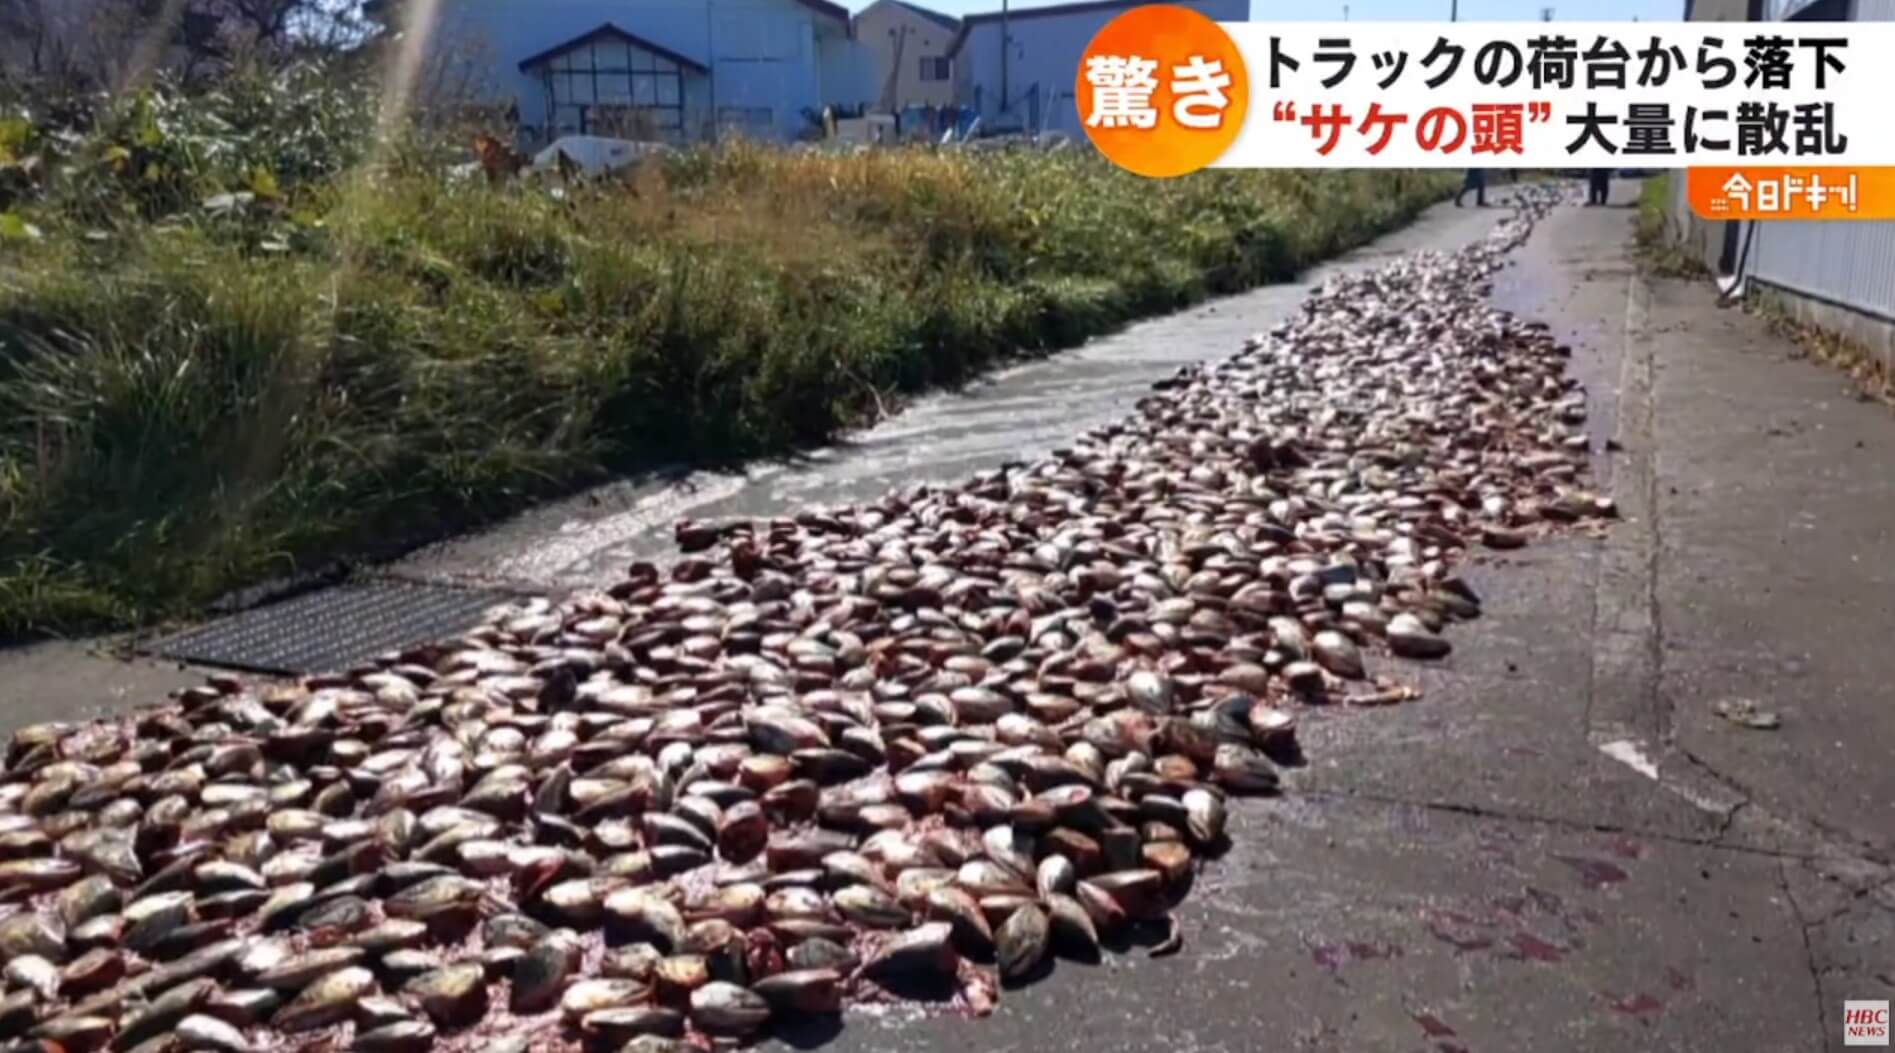 Centenas de “cabeças de salmão” aparecem em estrada de Hokkaido